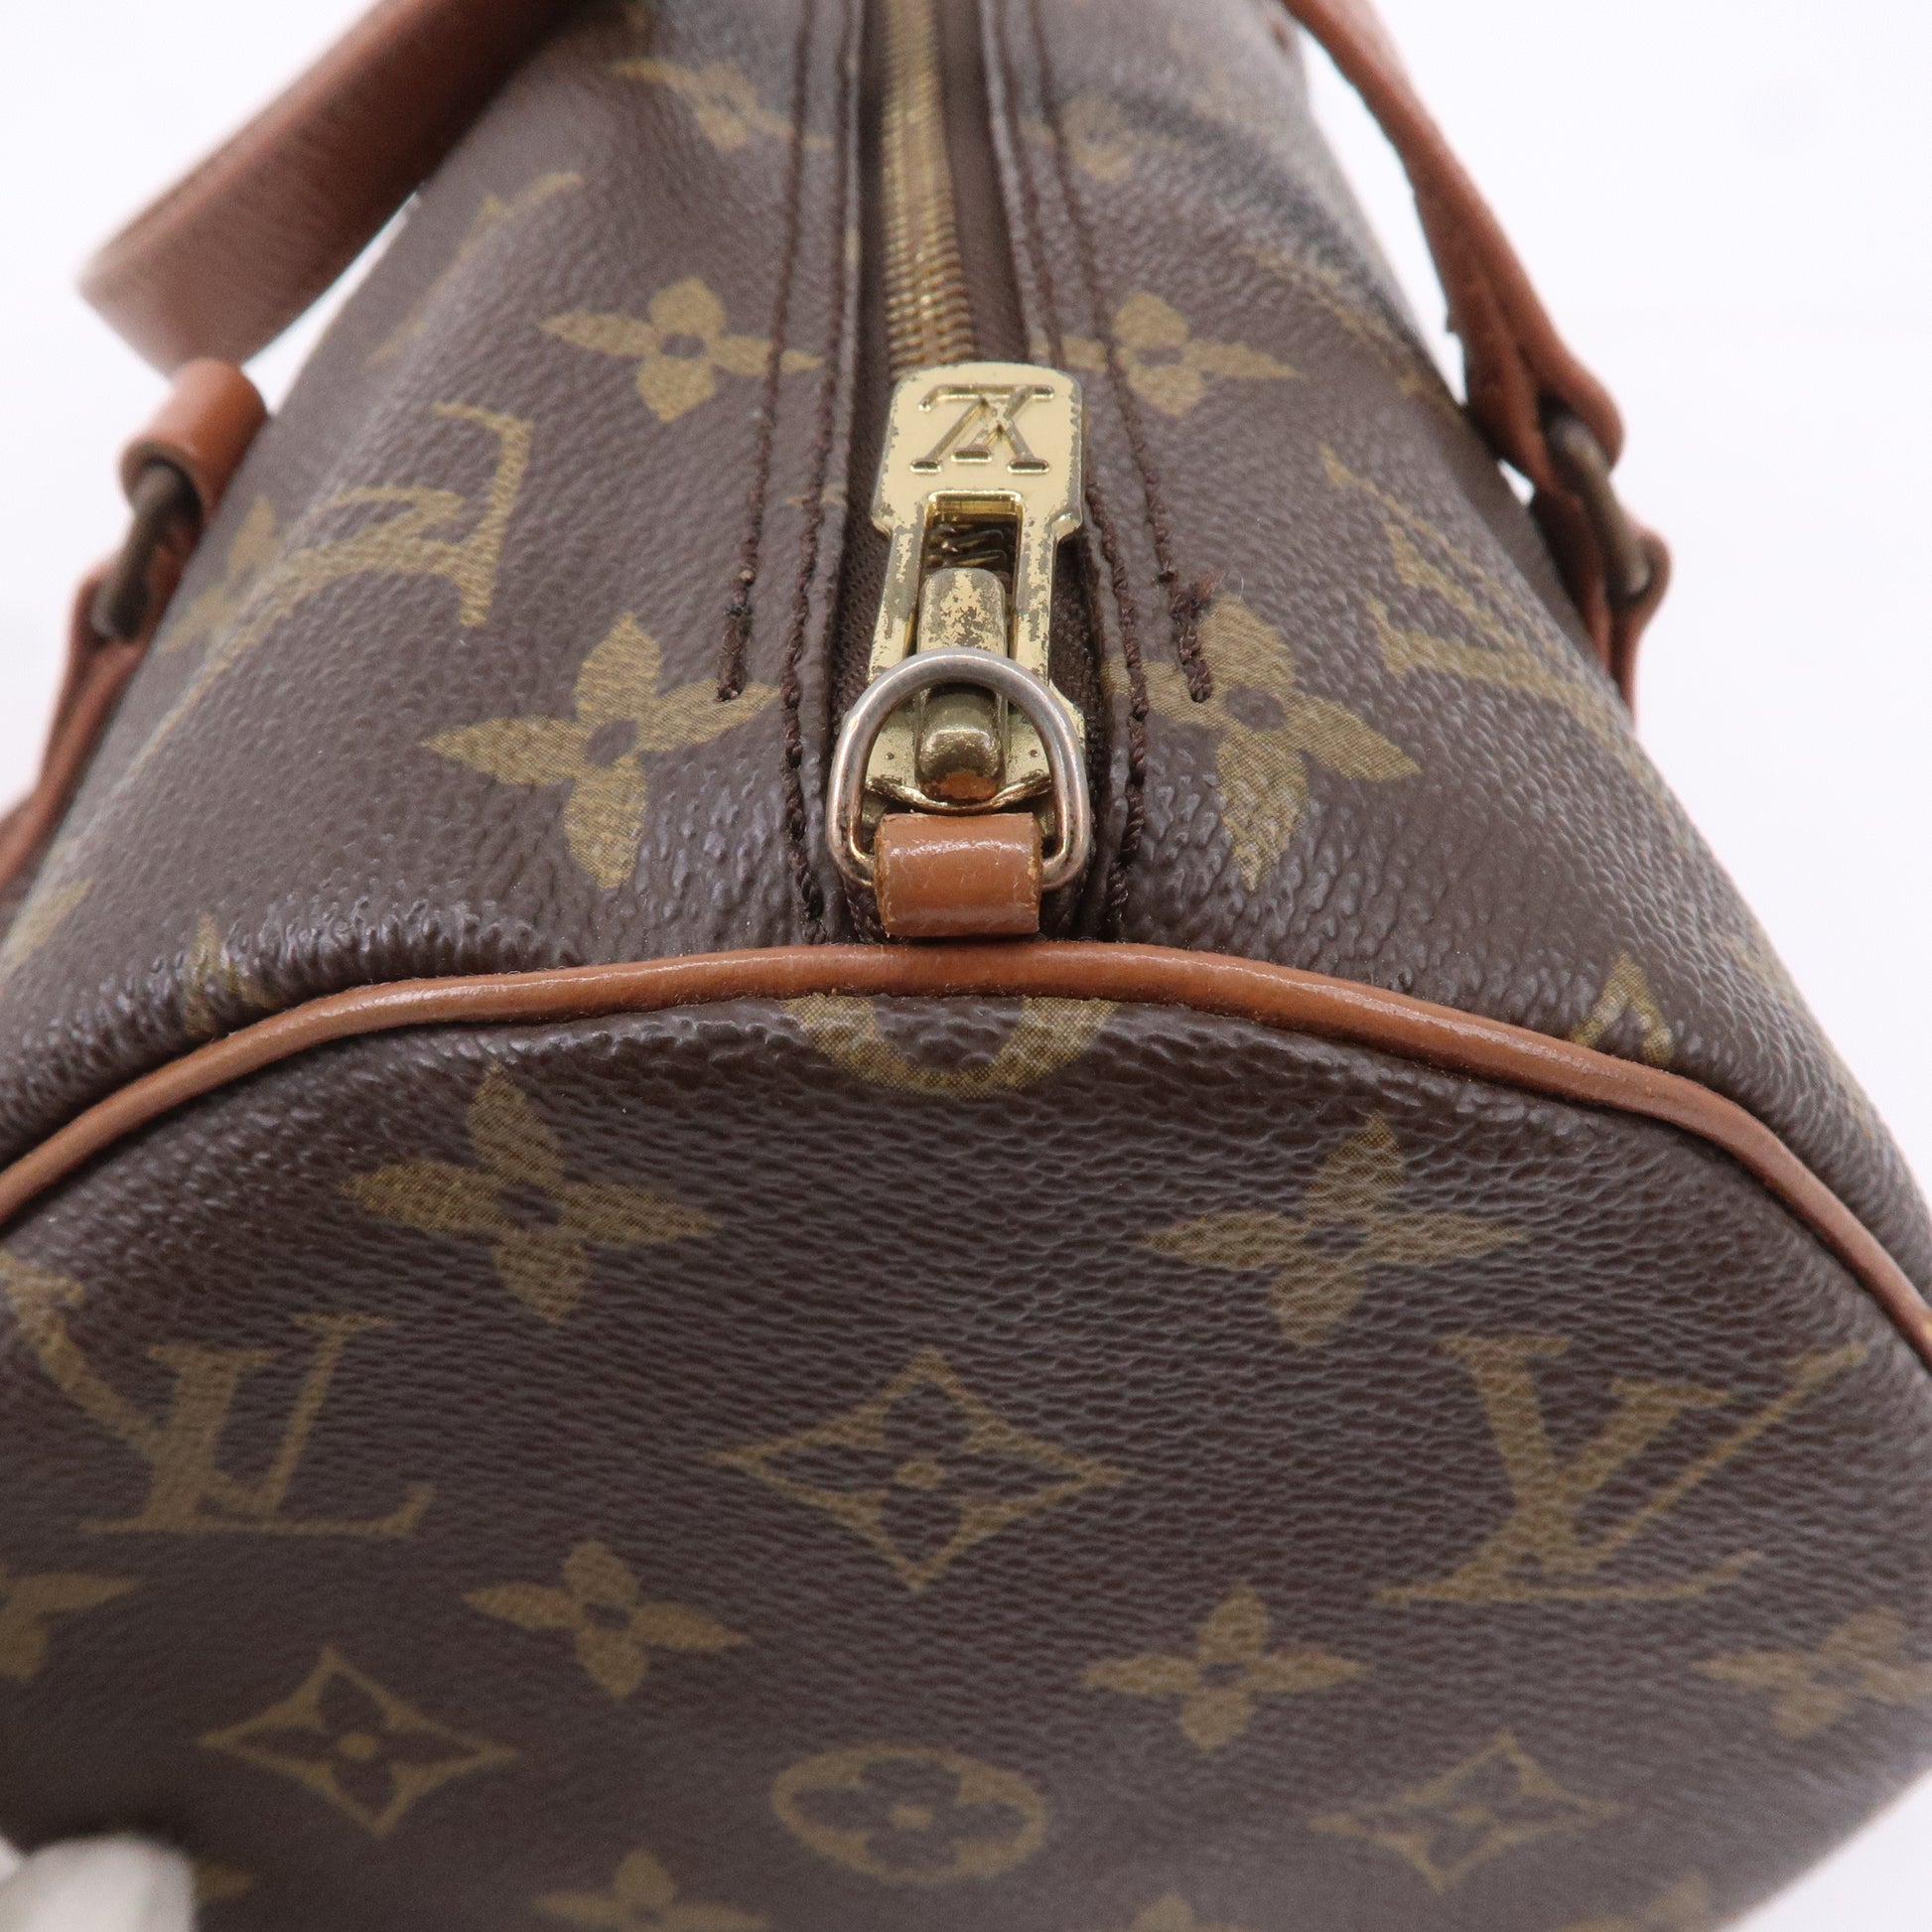 LOUIS VUITTON Louis Vuitton Monogram Papillon 30 handbag with